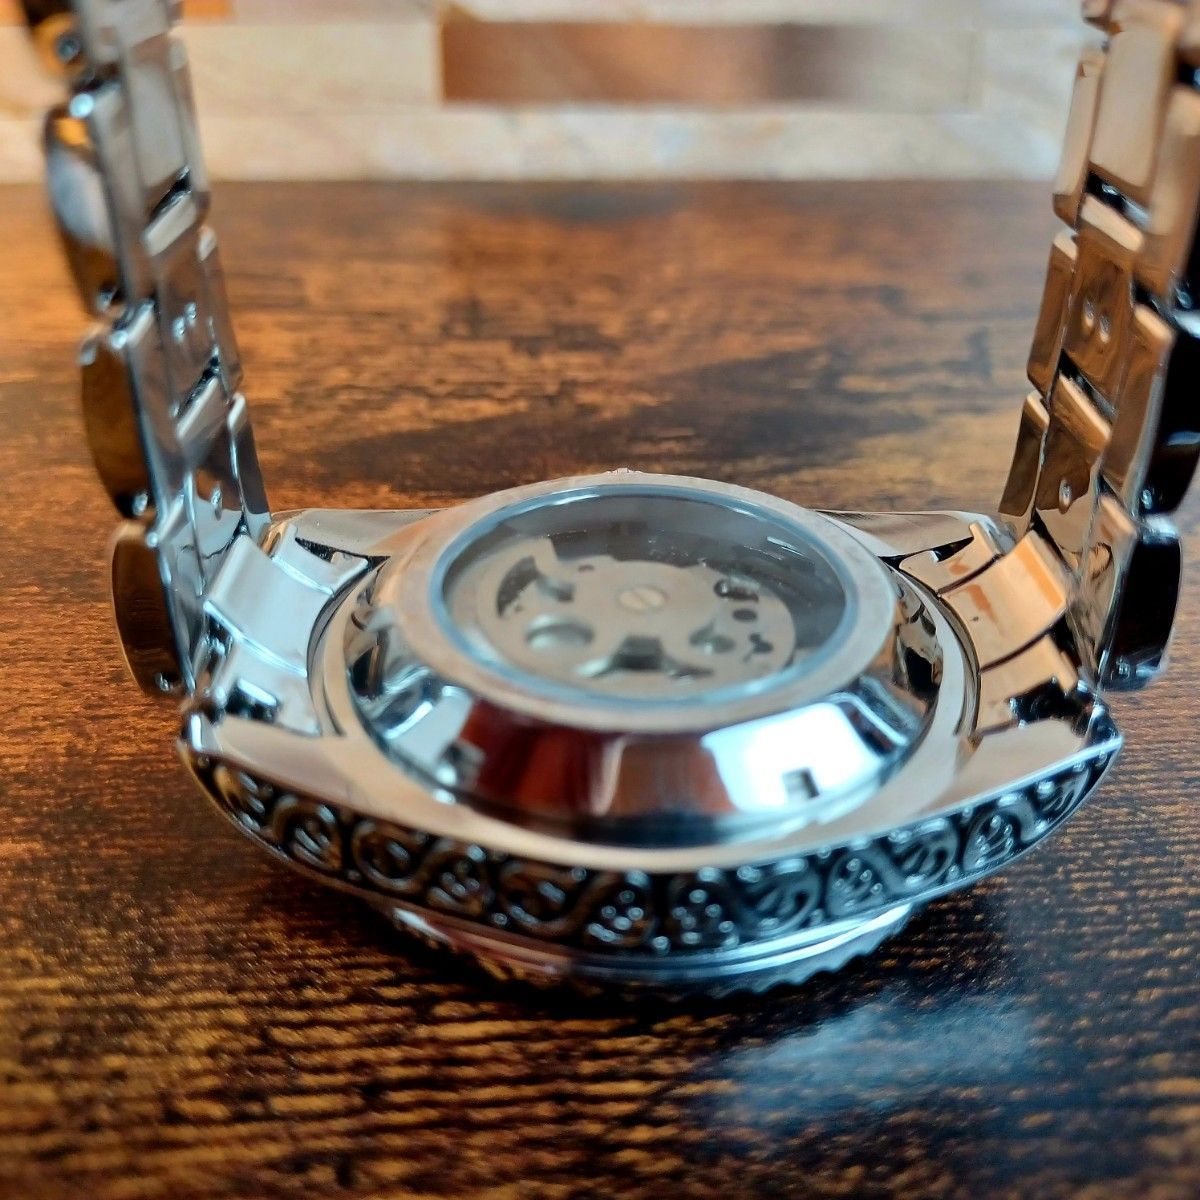 無料発送 新品 送料無料 フルスケルトン 最安値 機械式 腕時計 メンズ